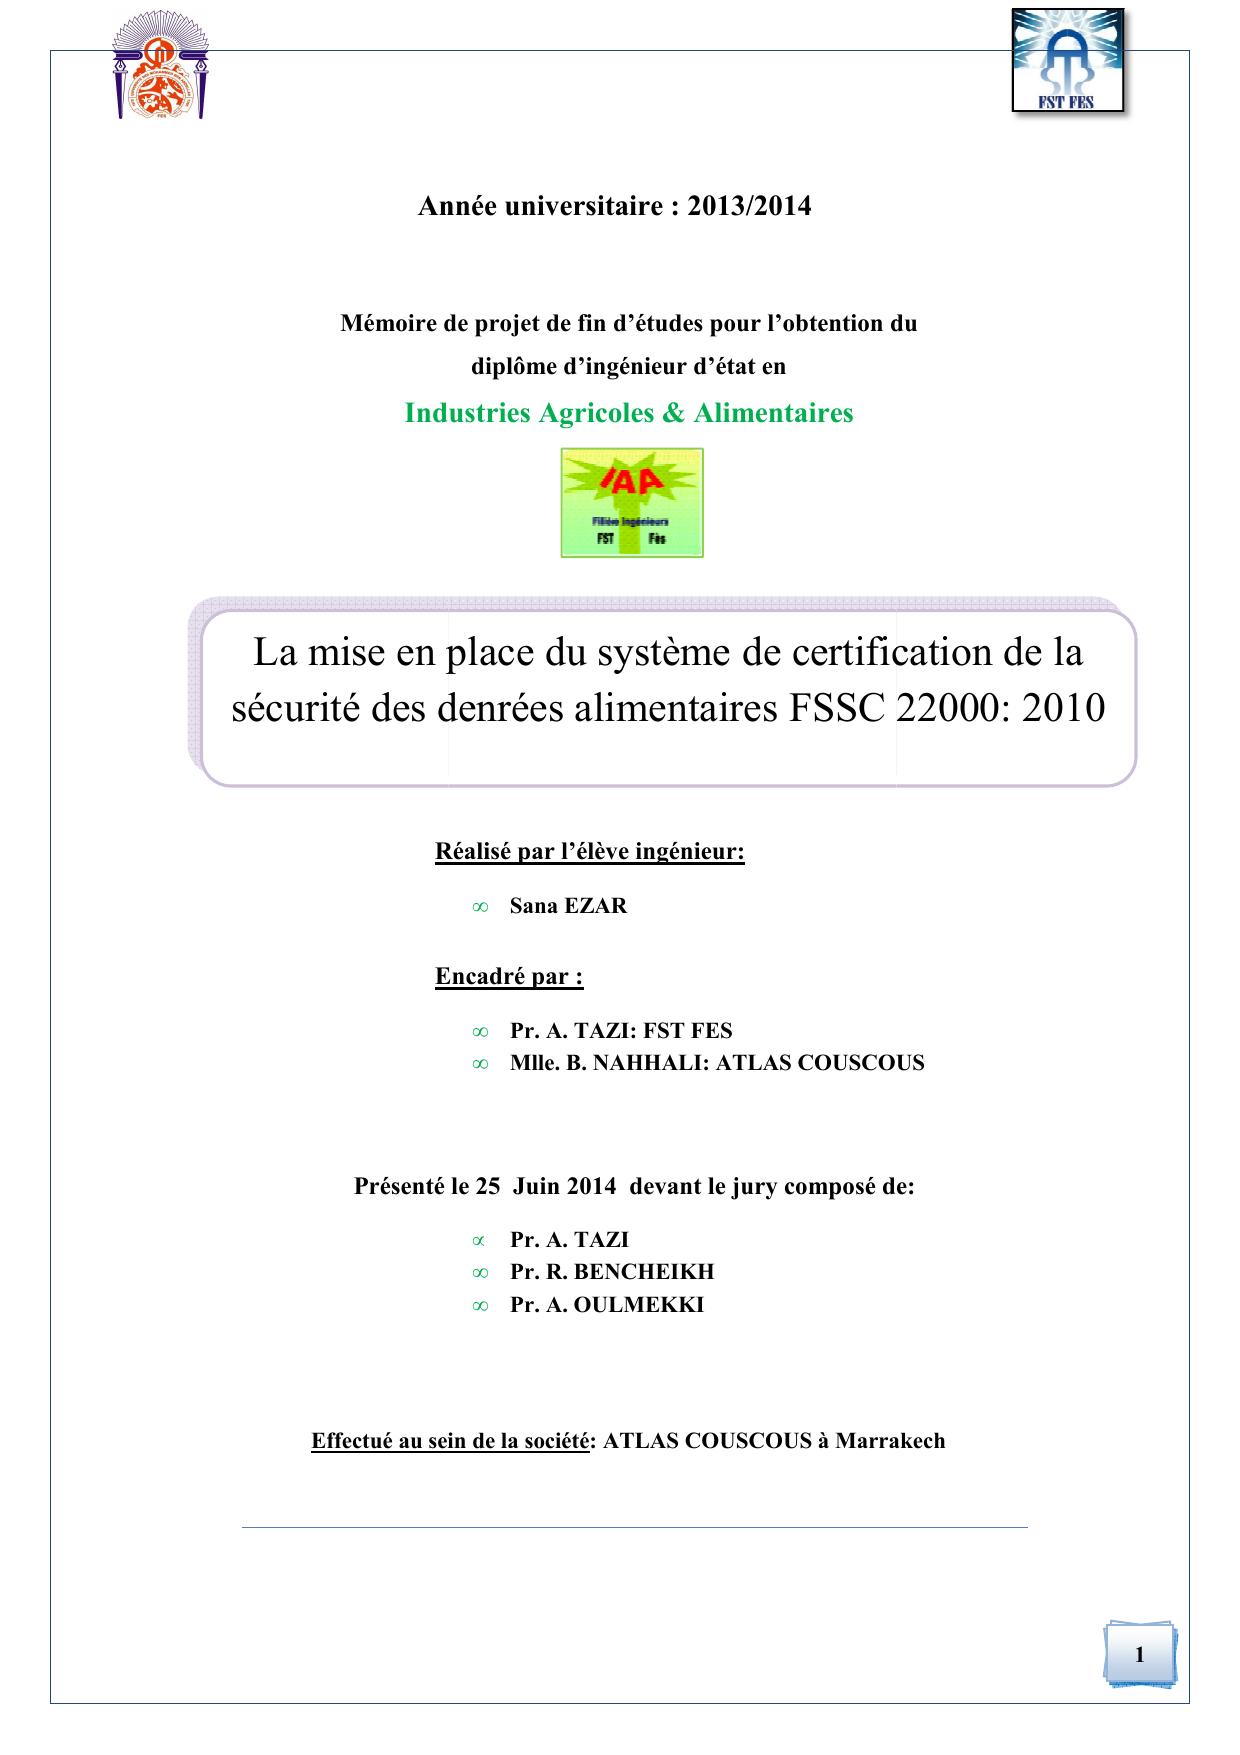 La mise en place du système de certification de la sécurité des denrées alimentaires FSSC 22000: 2010